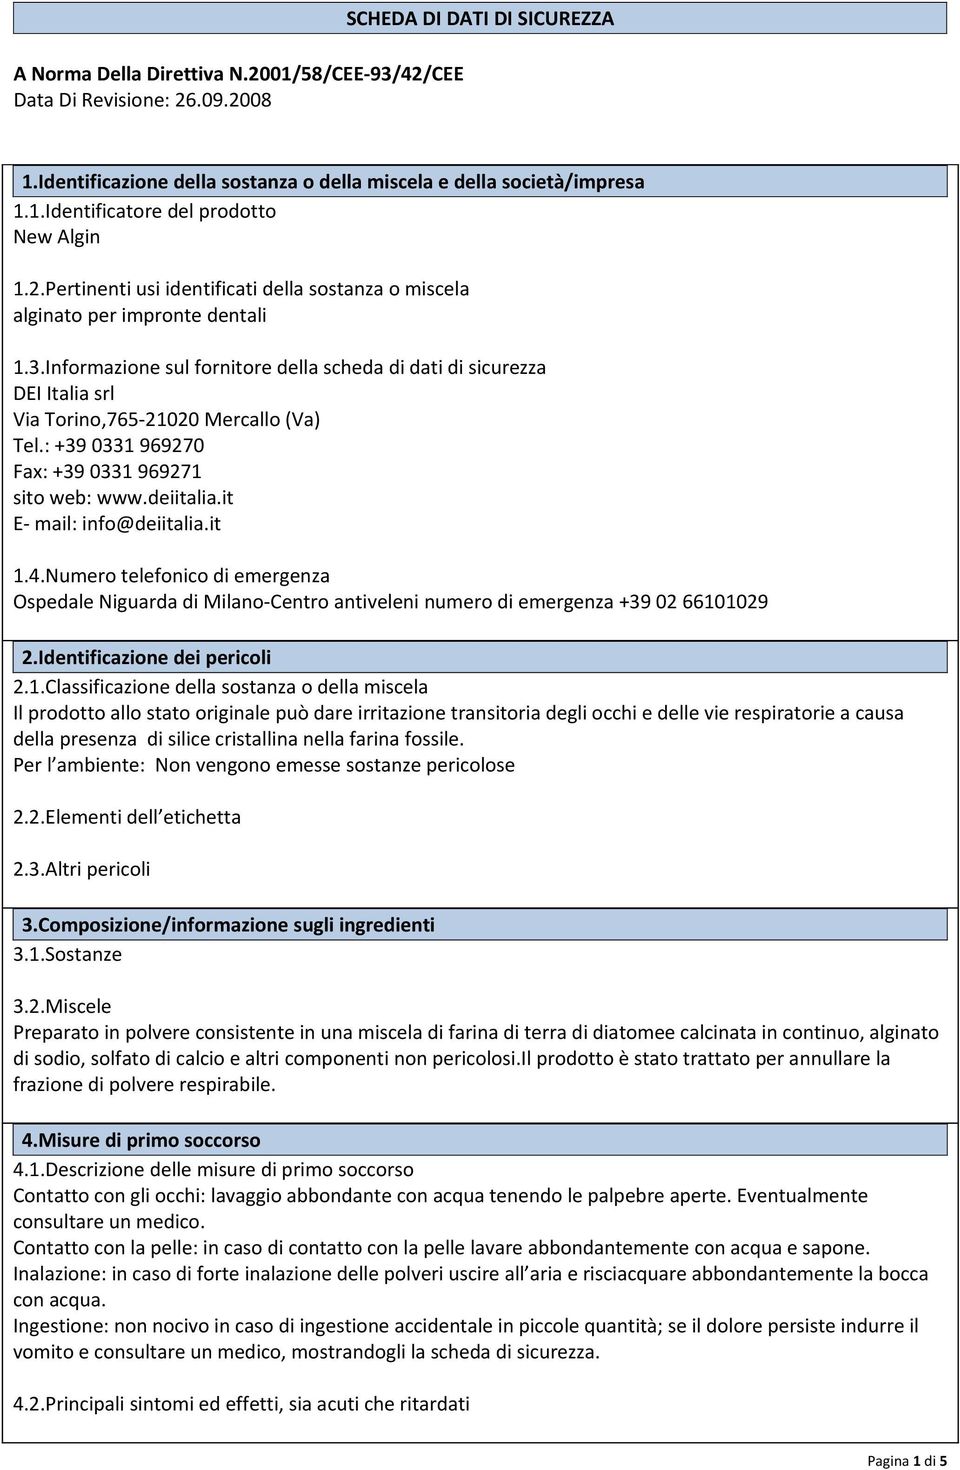 Informazione sul fornitore della scheda di dati di sicurezza DEI Italia srl Via Torino,765-21020 Mercallo (Va) Tel.: +39 0331 969270 Fax: +39 0331 969271 sito web: www.deiitalia.